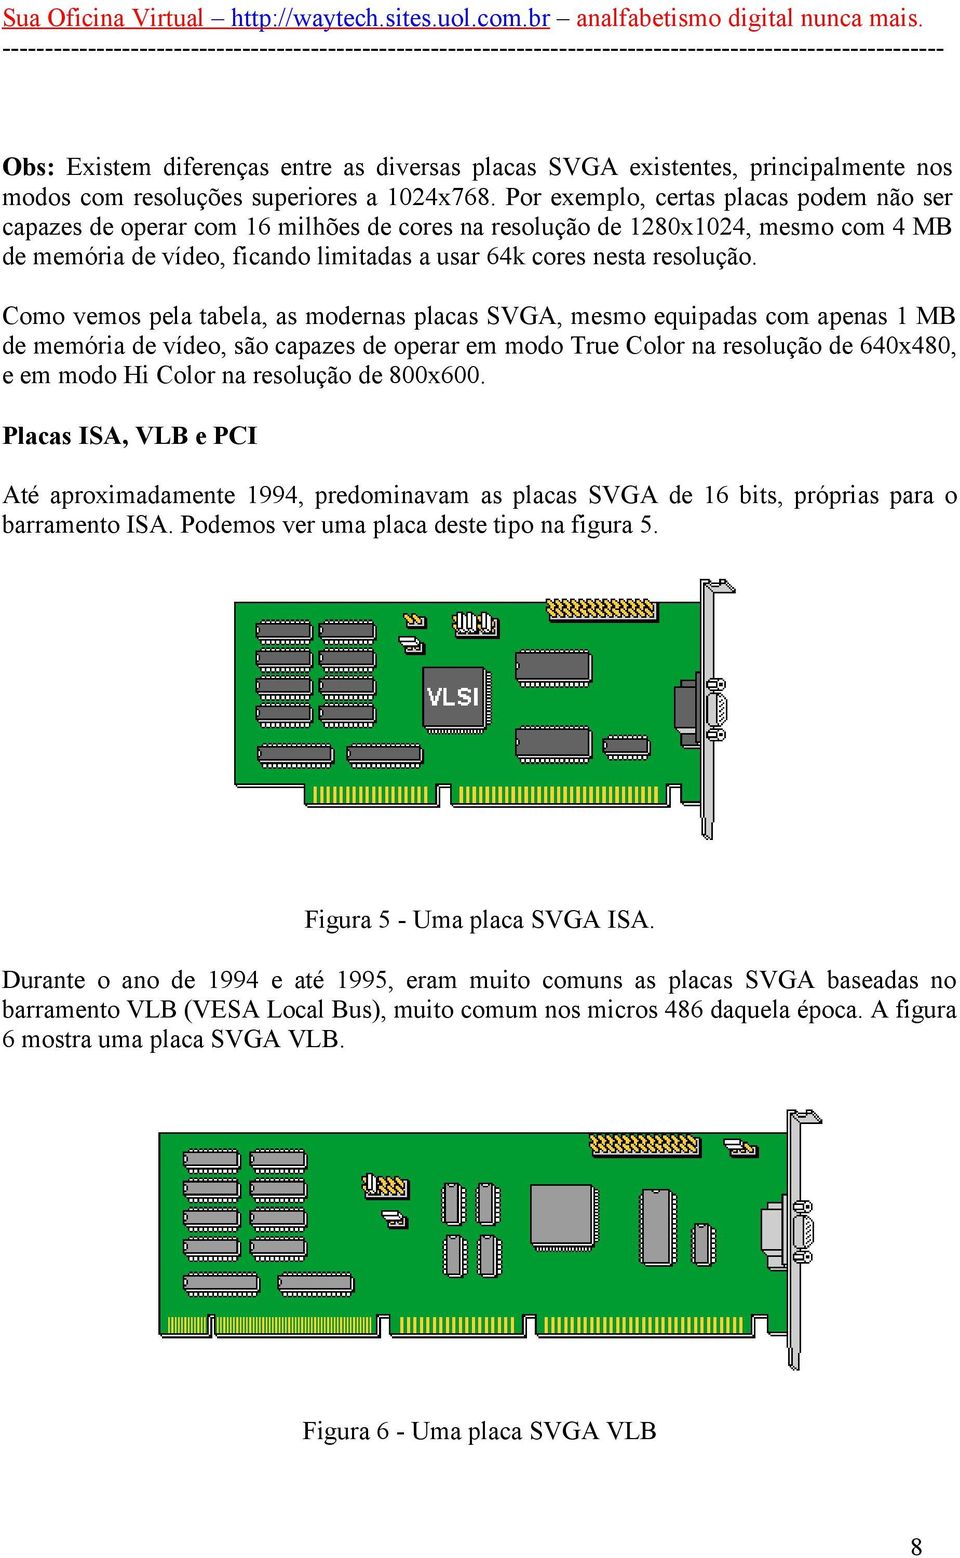 Como vemos pela tabela, as modernas placas SVGA, mesmo equipadas com apenas 1 MB de memória de vídeo, são capazes de operar em modo True Color na resolução de 640x480, e em modo Hi Color na resolução